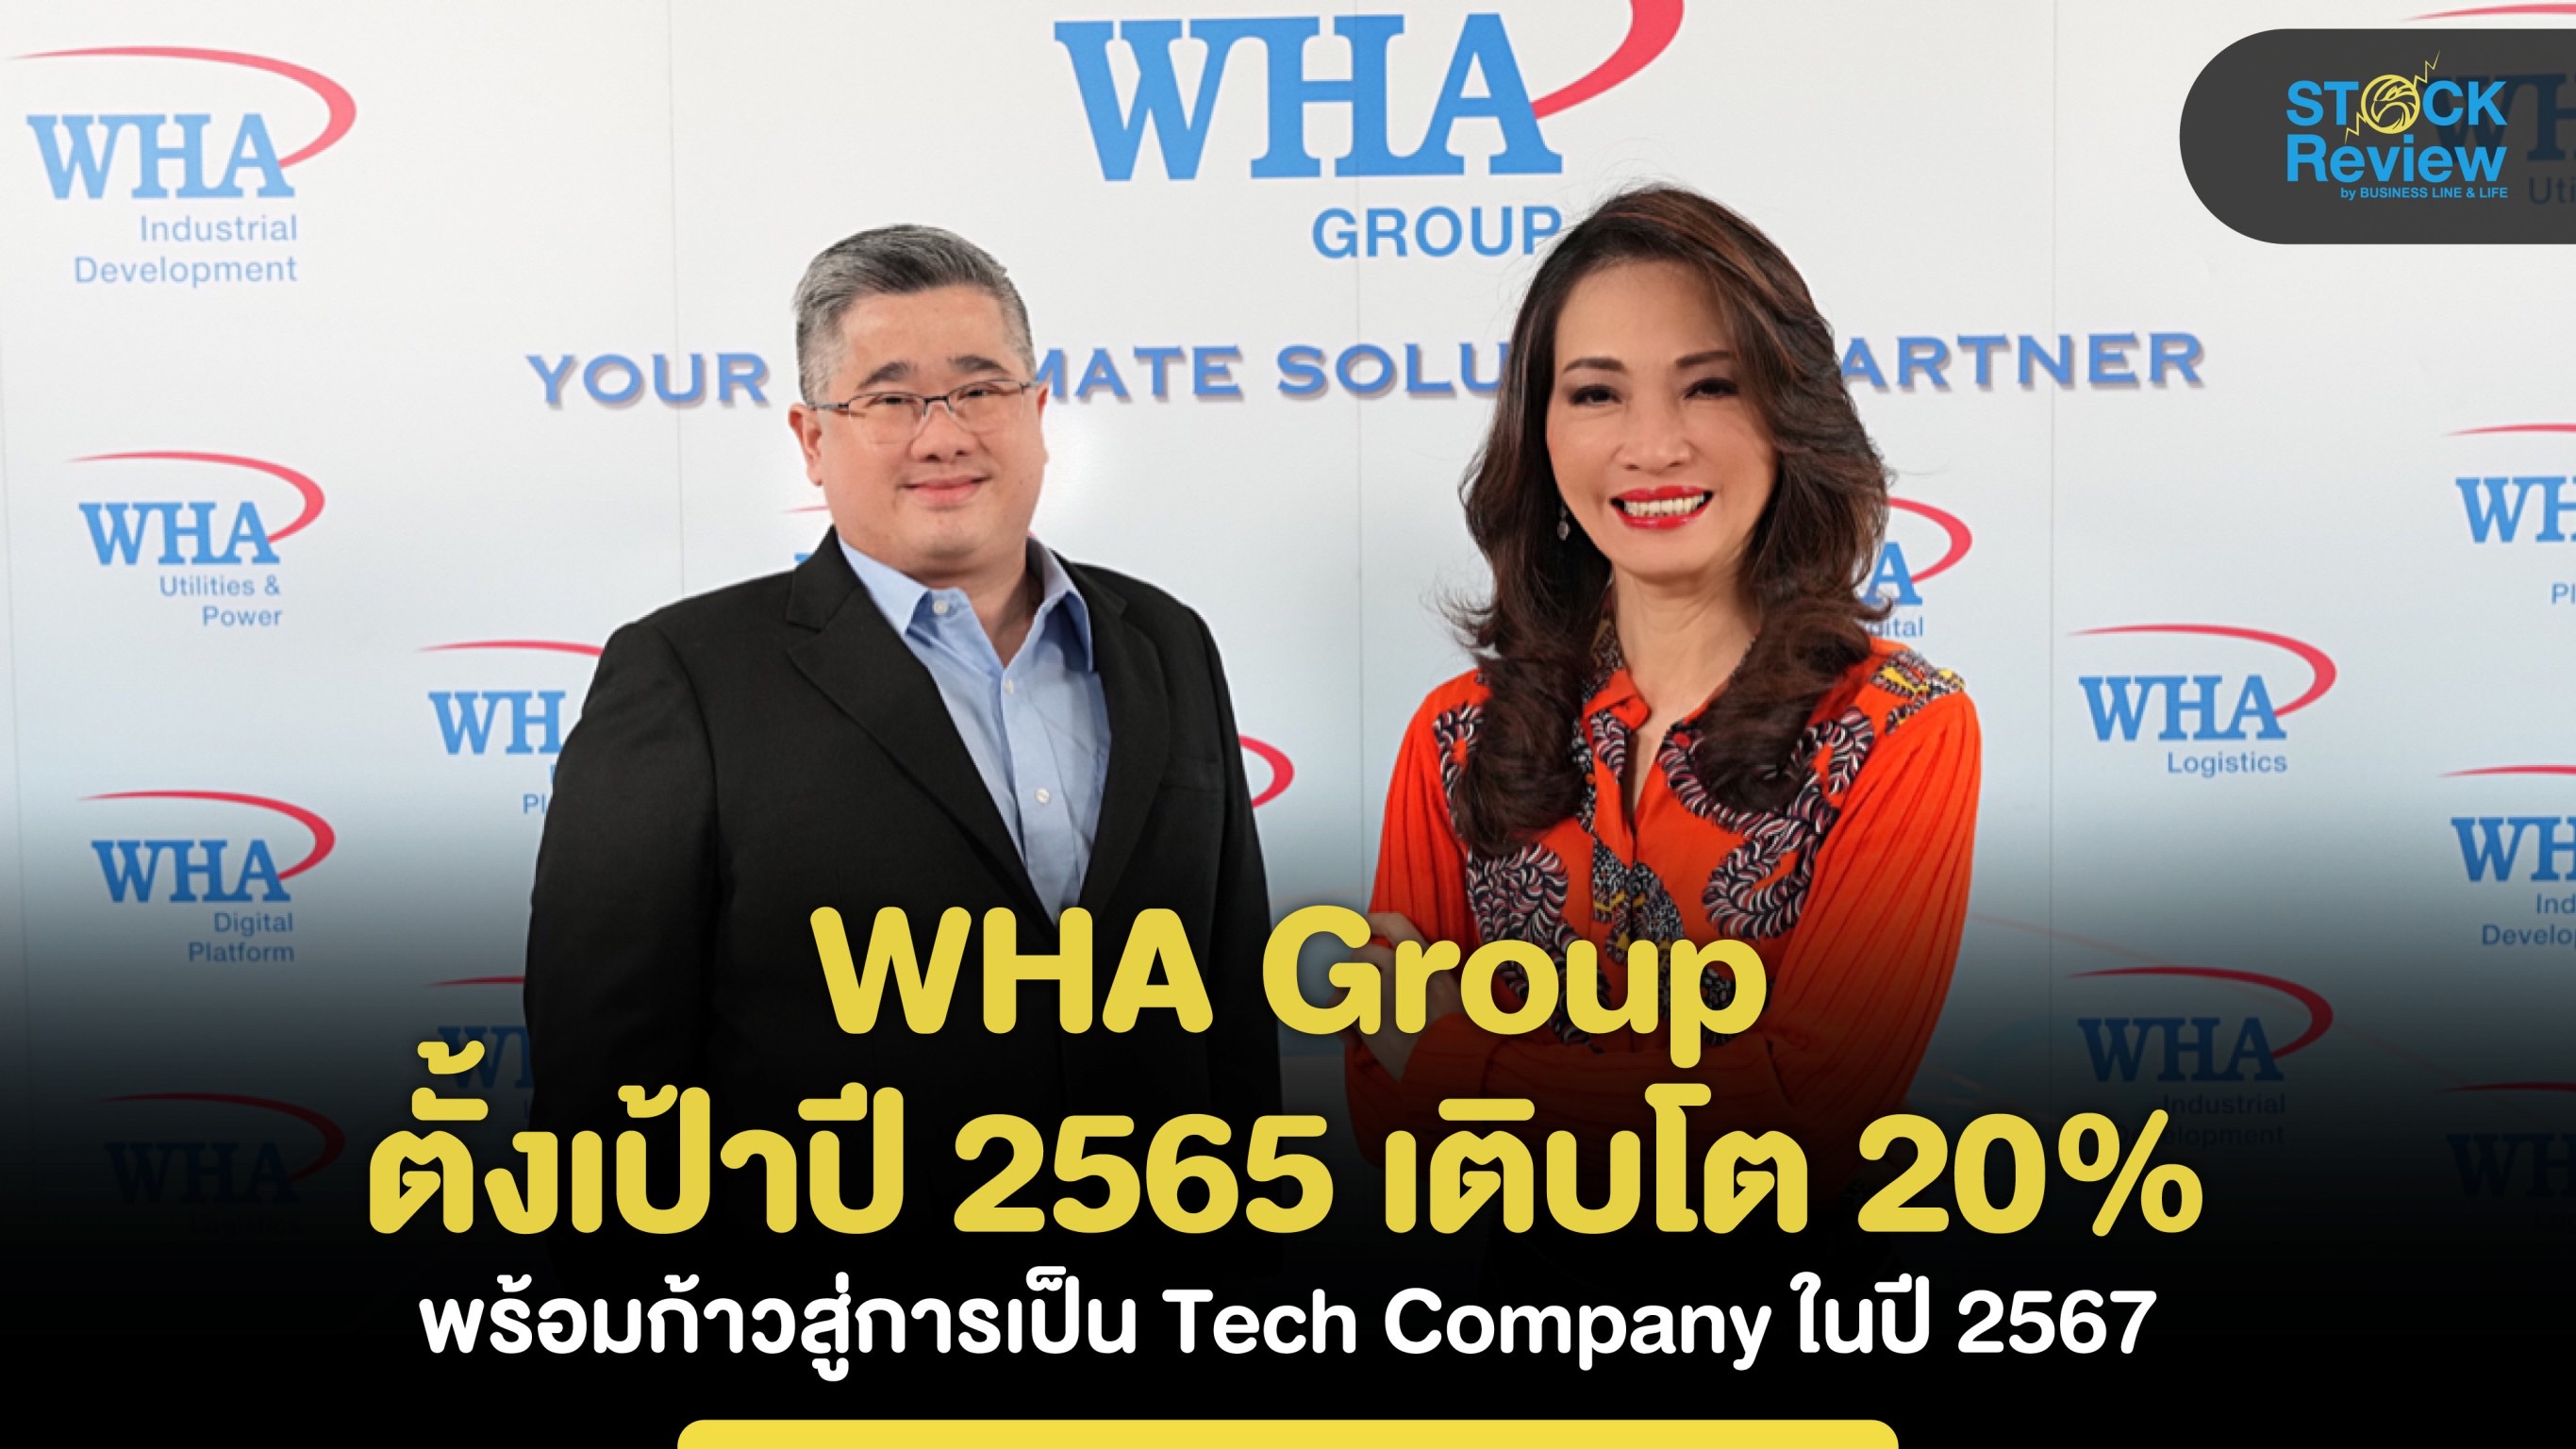 WHA Group ตั้งเป้าปี 2565 เติบโต 20% พร้อมก้าวสู่การเป็น Tech Company ในปี 2567